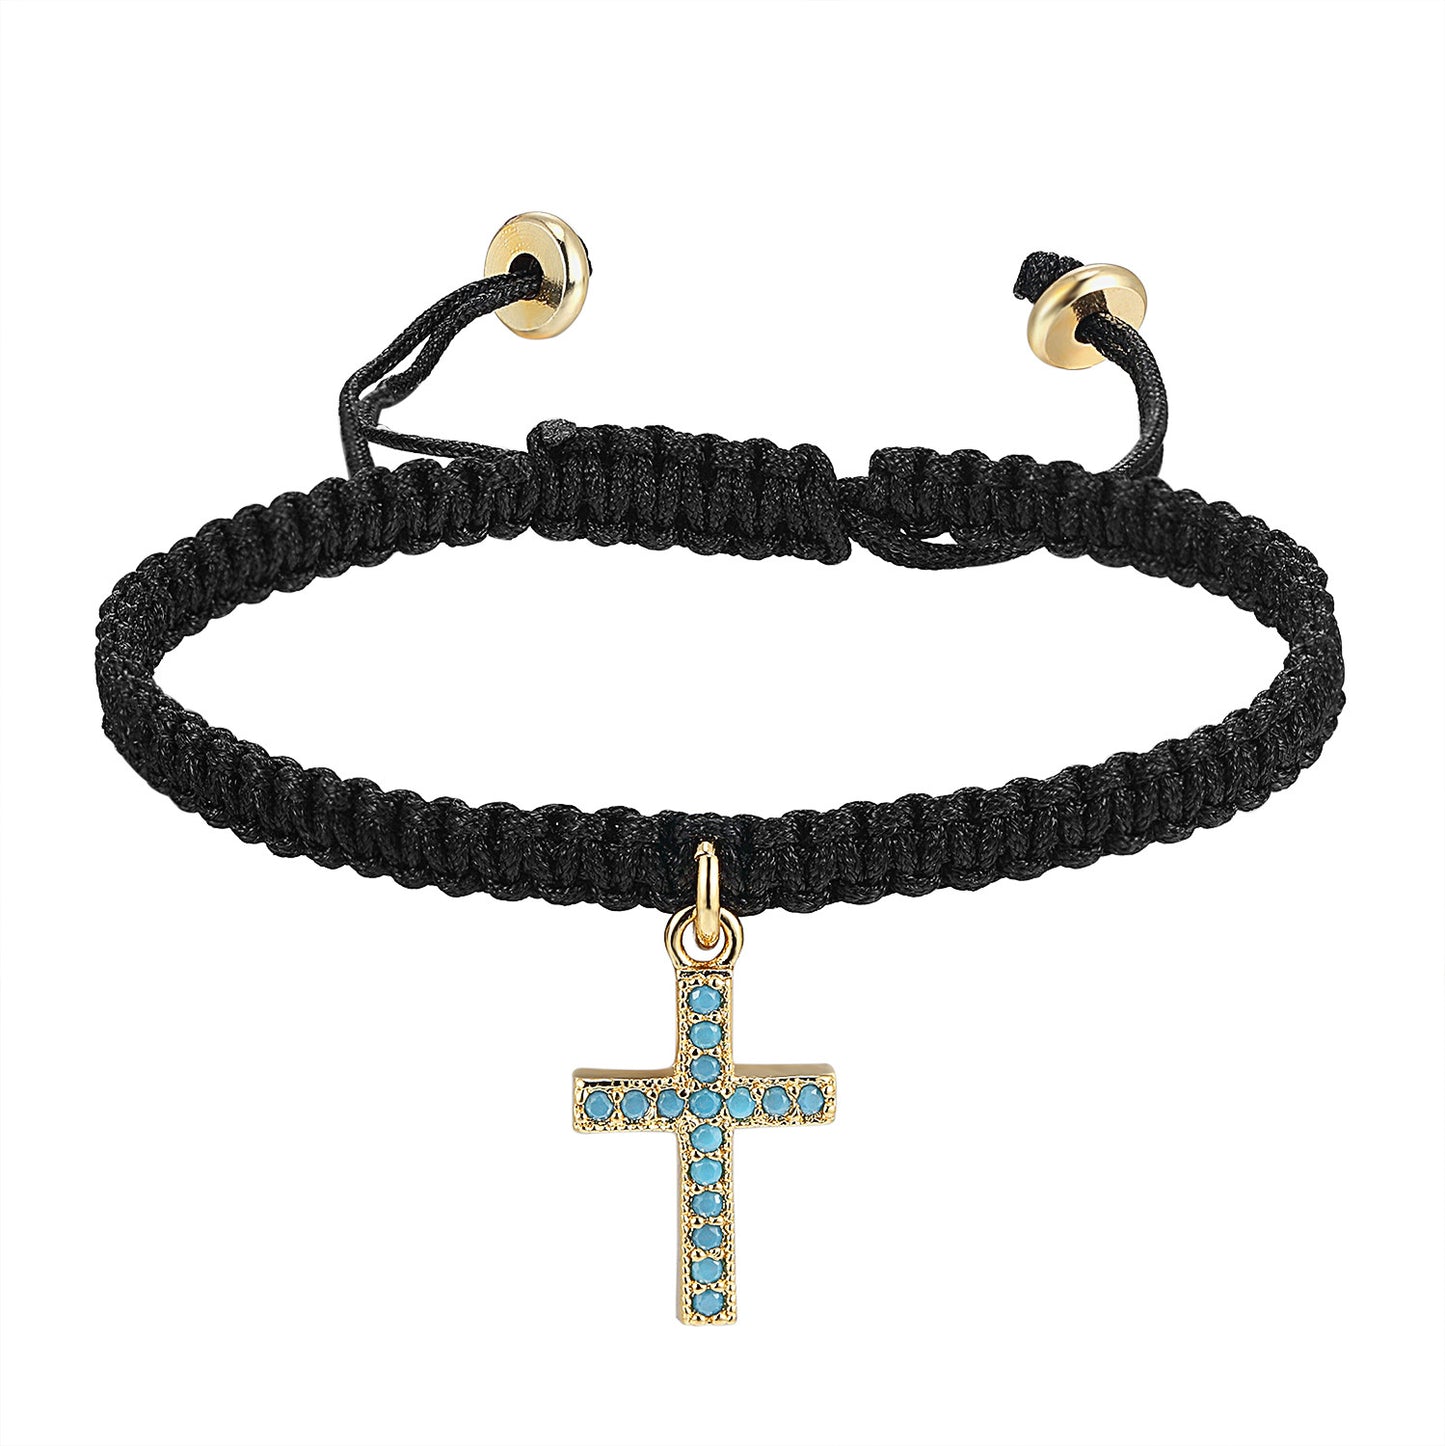 Religious Cross Turquoise Stones Charm Black Braided Woven 14k Gold Finish Bracelet